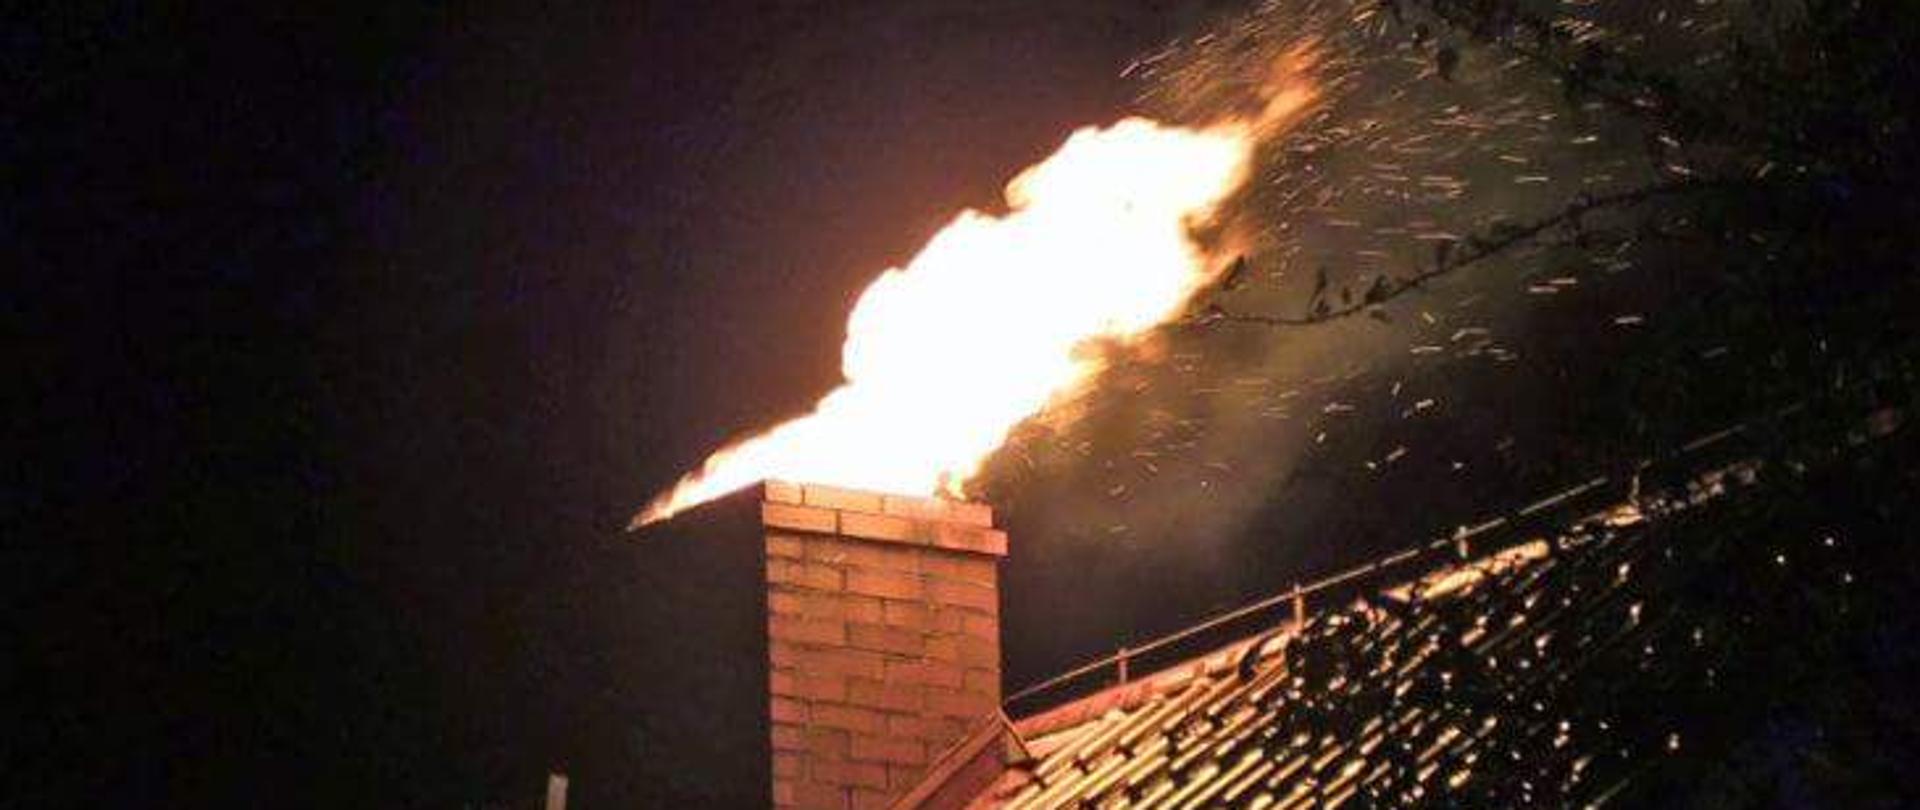 Zdjęcie przedstawia pożar sadzy w kominie. Na zdjęciu widać dach budynku i komin z którego wydobywa się ogień. Pora nocna. 